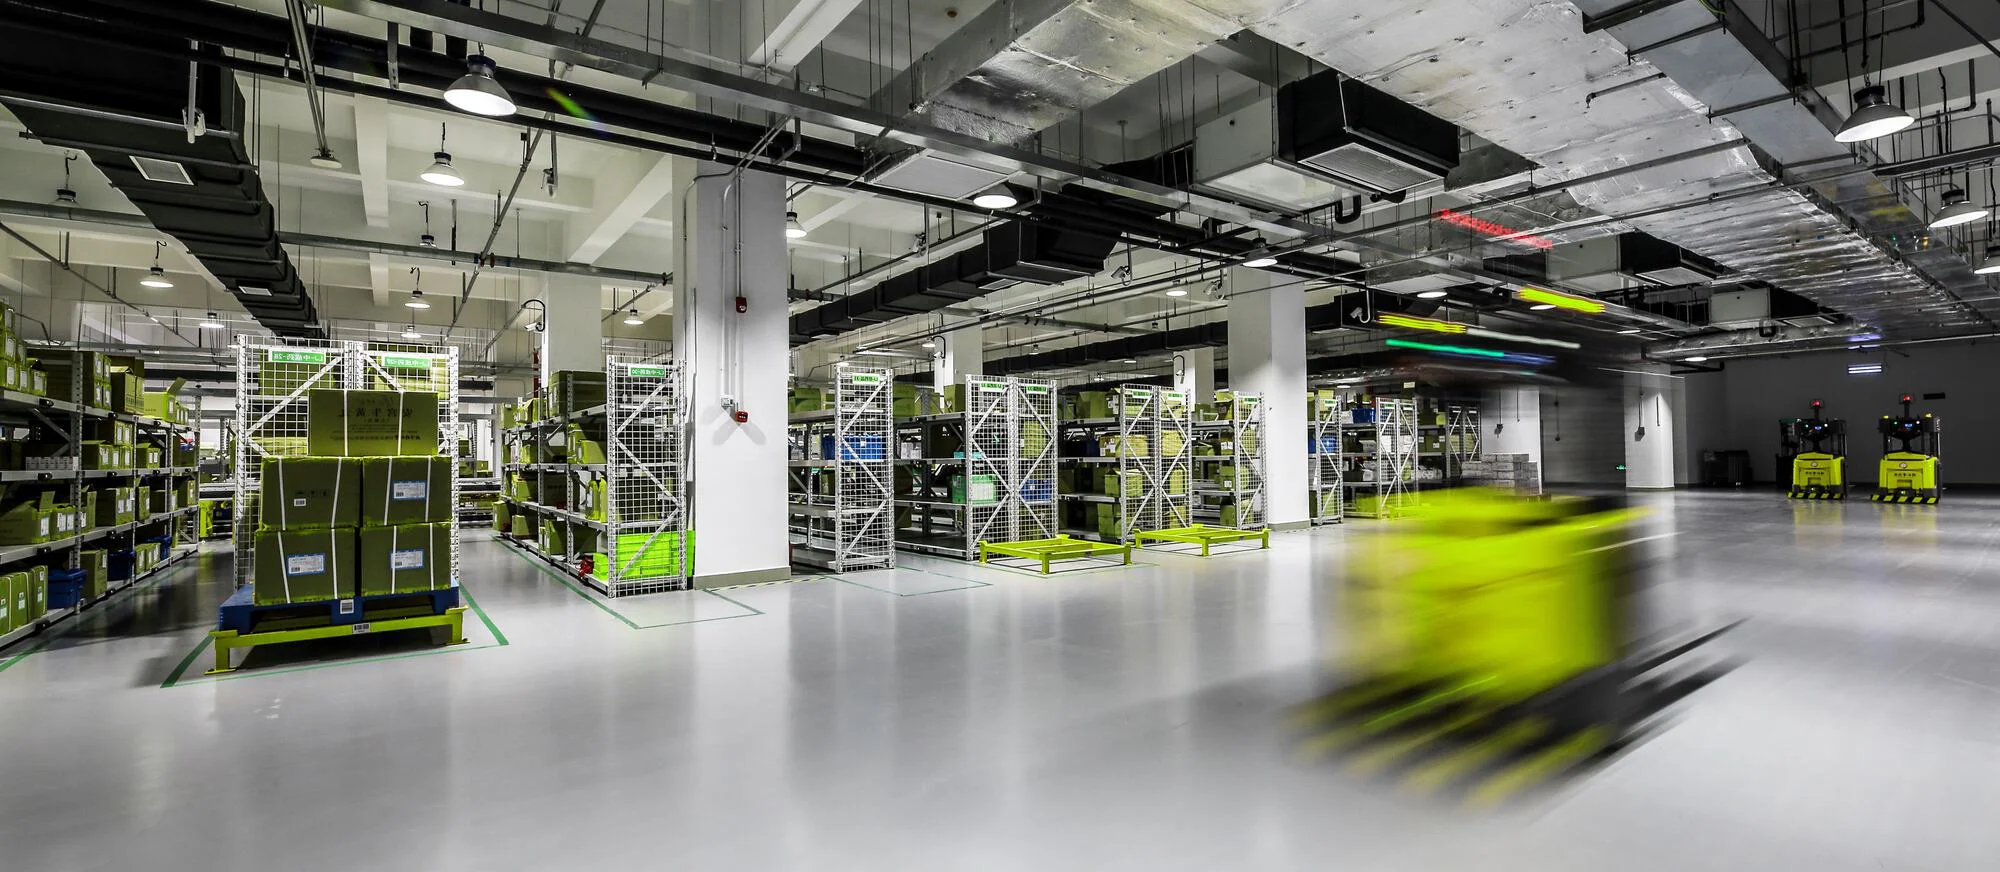 Auf dem Bild ist ein modernes Lager mit leuchtend gelben, beweglichen Automatisierungsrobotern zu sehen, die sich zwischen Lagerregalen bewegen.